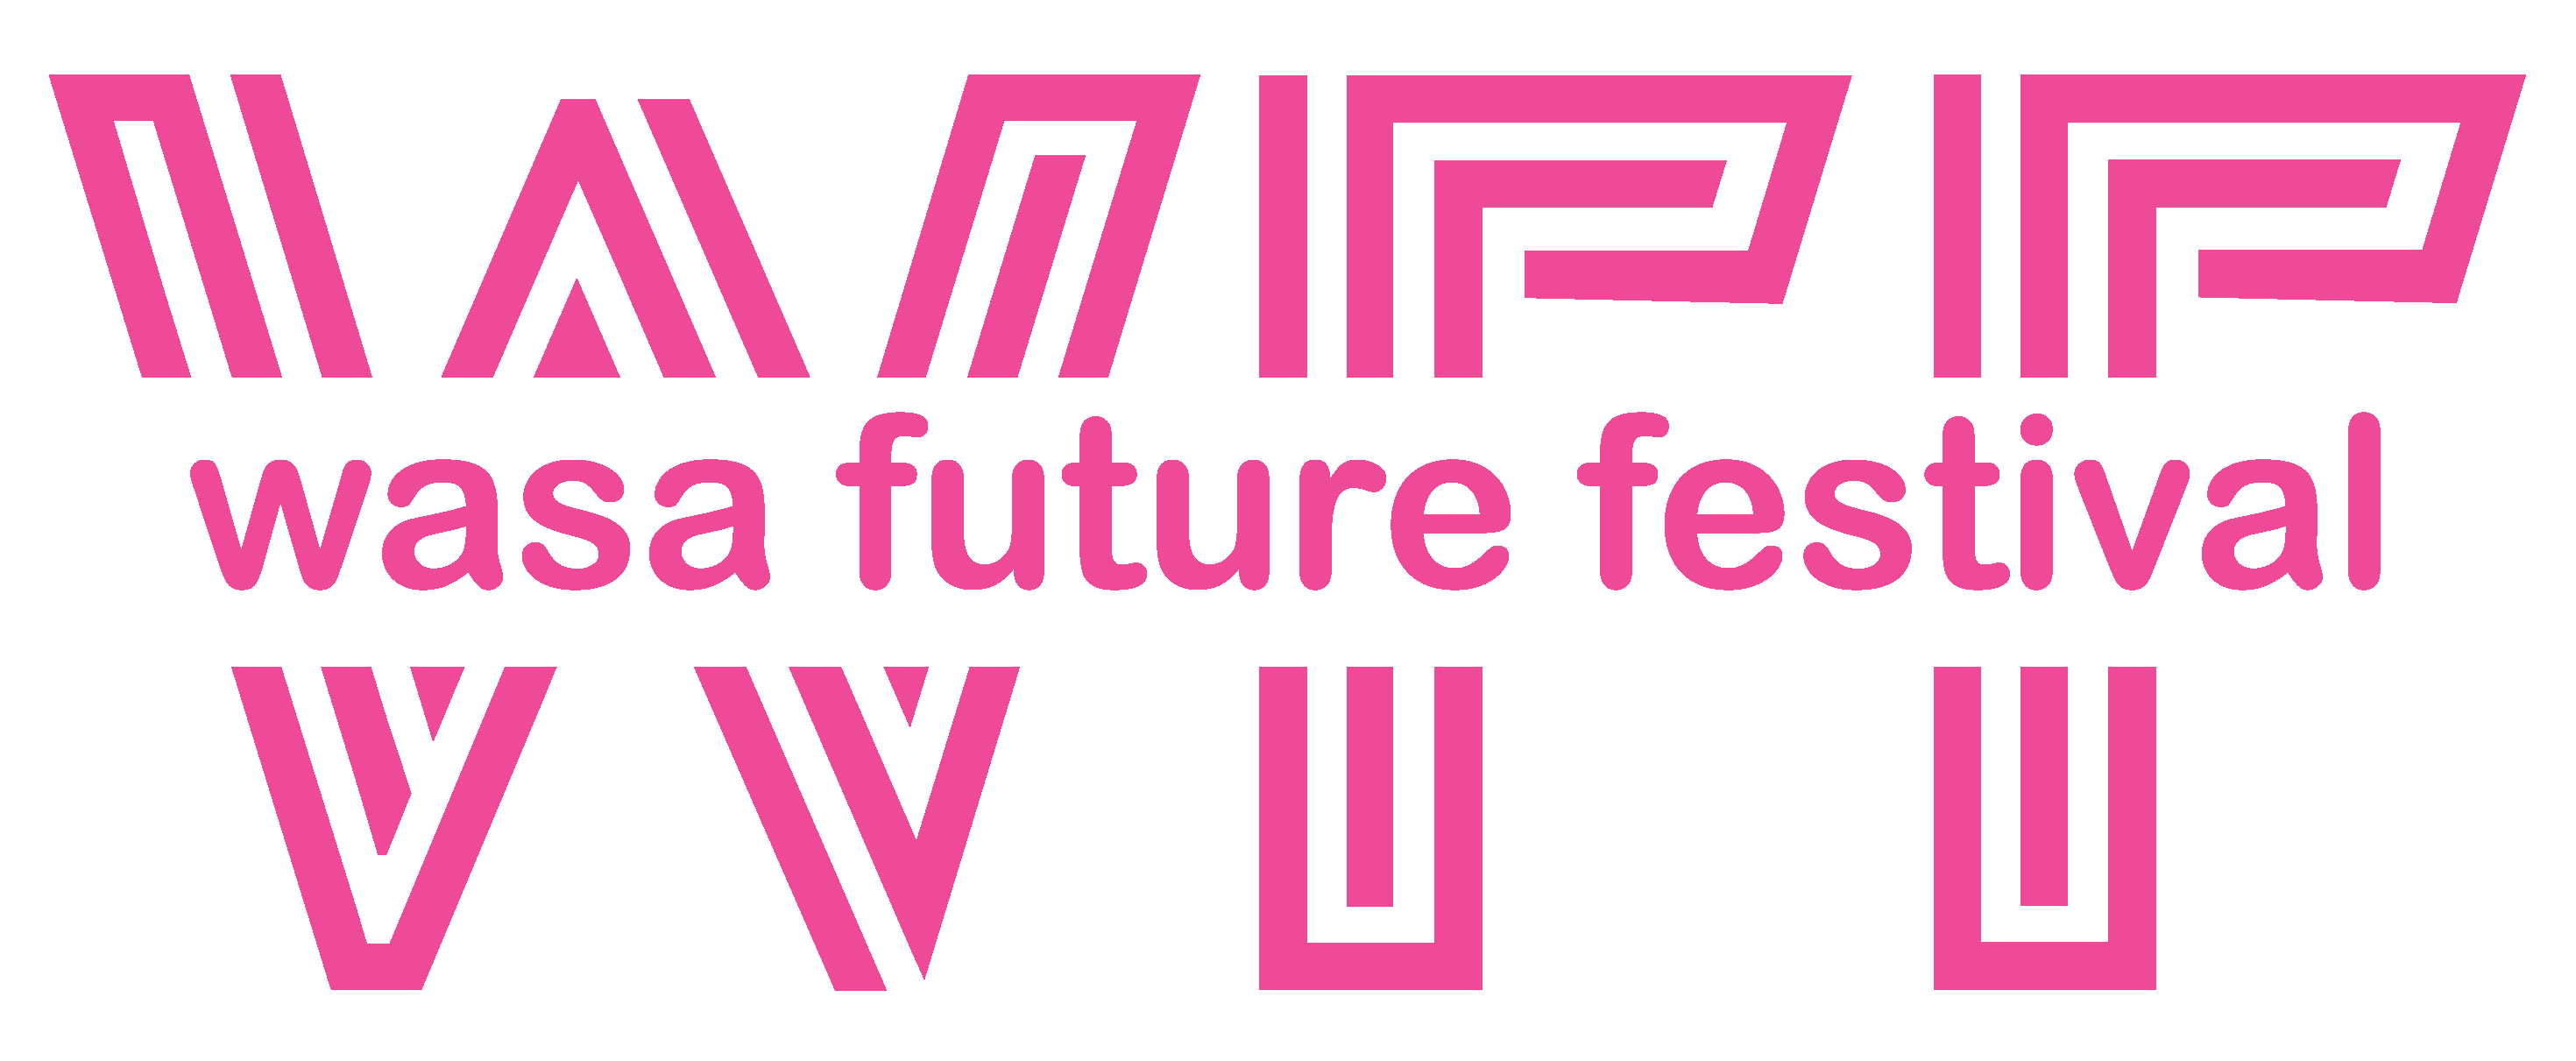 Top 70+ imagen wasa future festival